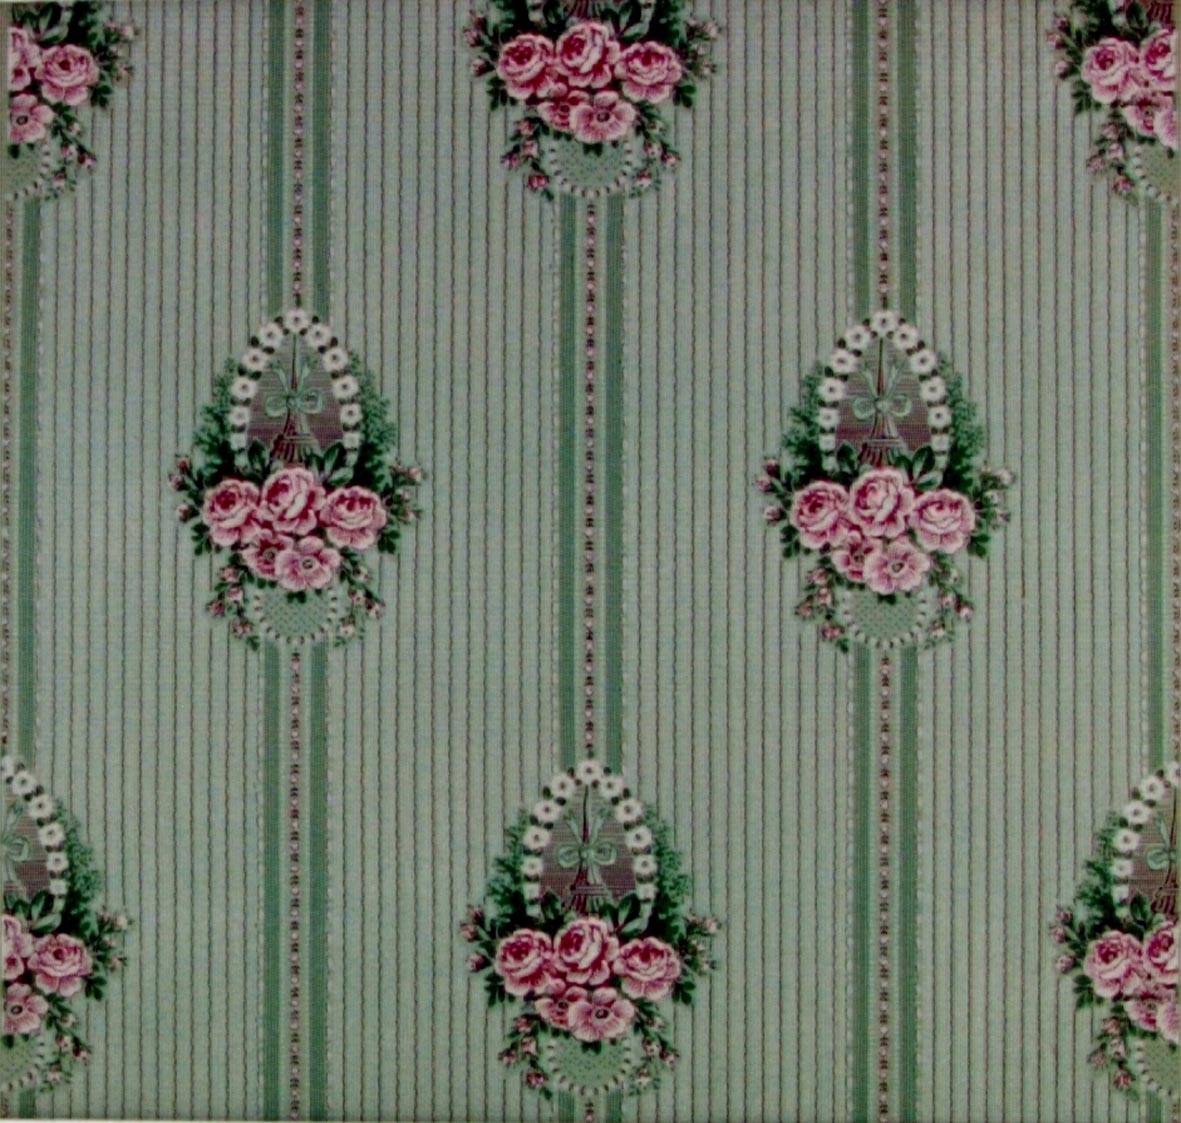 Randmönster med spetsbårder och rosenbuketter med girlanger i diagonalupprepning. Tryck i rosa,vinrött och grönt på ett ljusgrönt genomfärgat papper. Textilimiterande bakgrund.